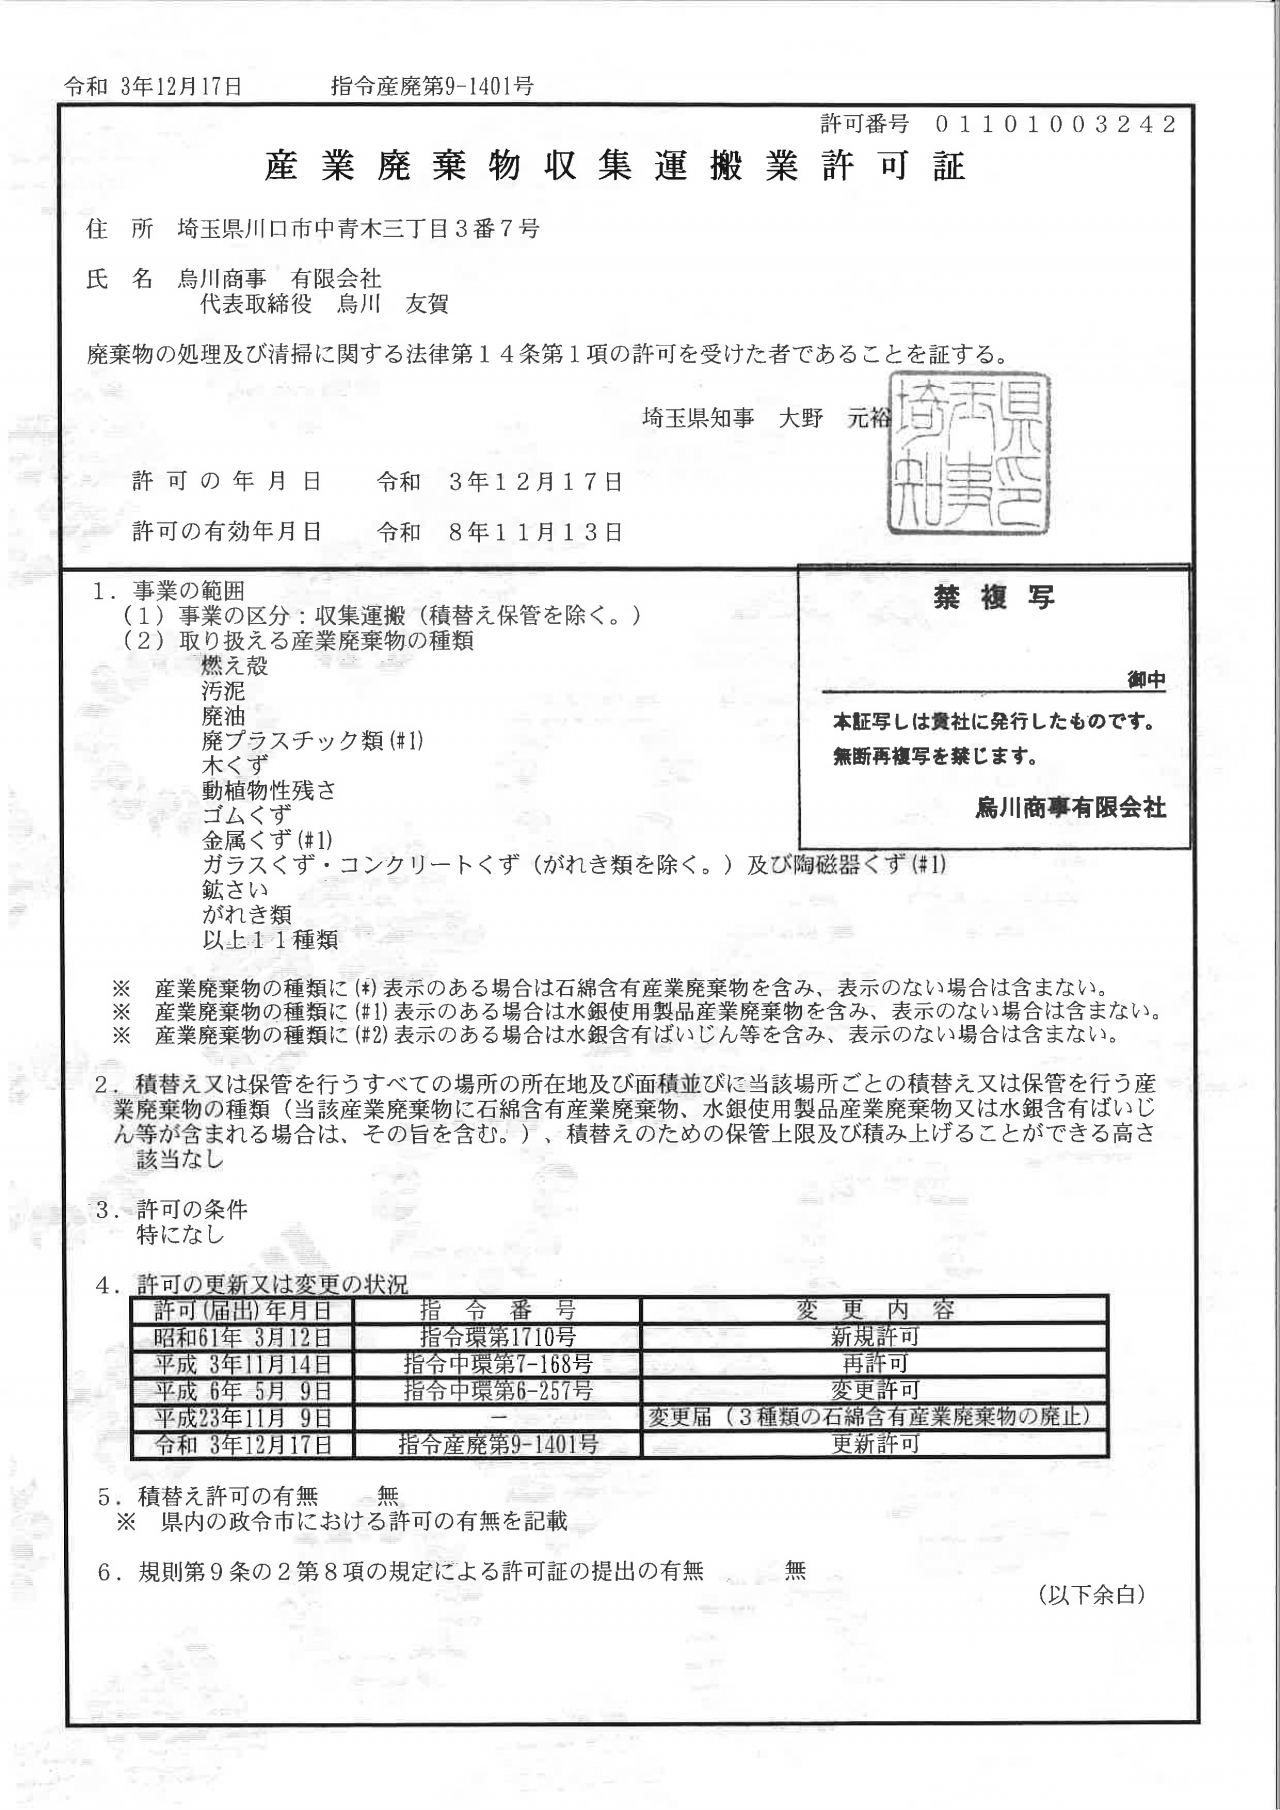 産業廃棄物収集運搬業許可証【11種（埼玉県）】